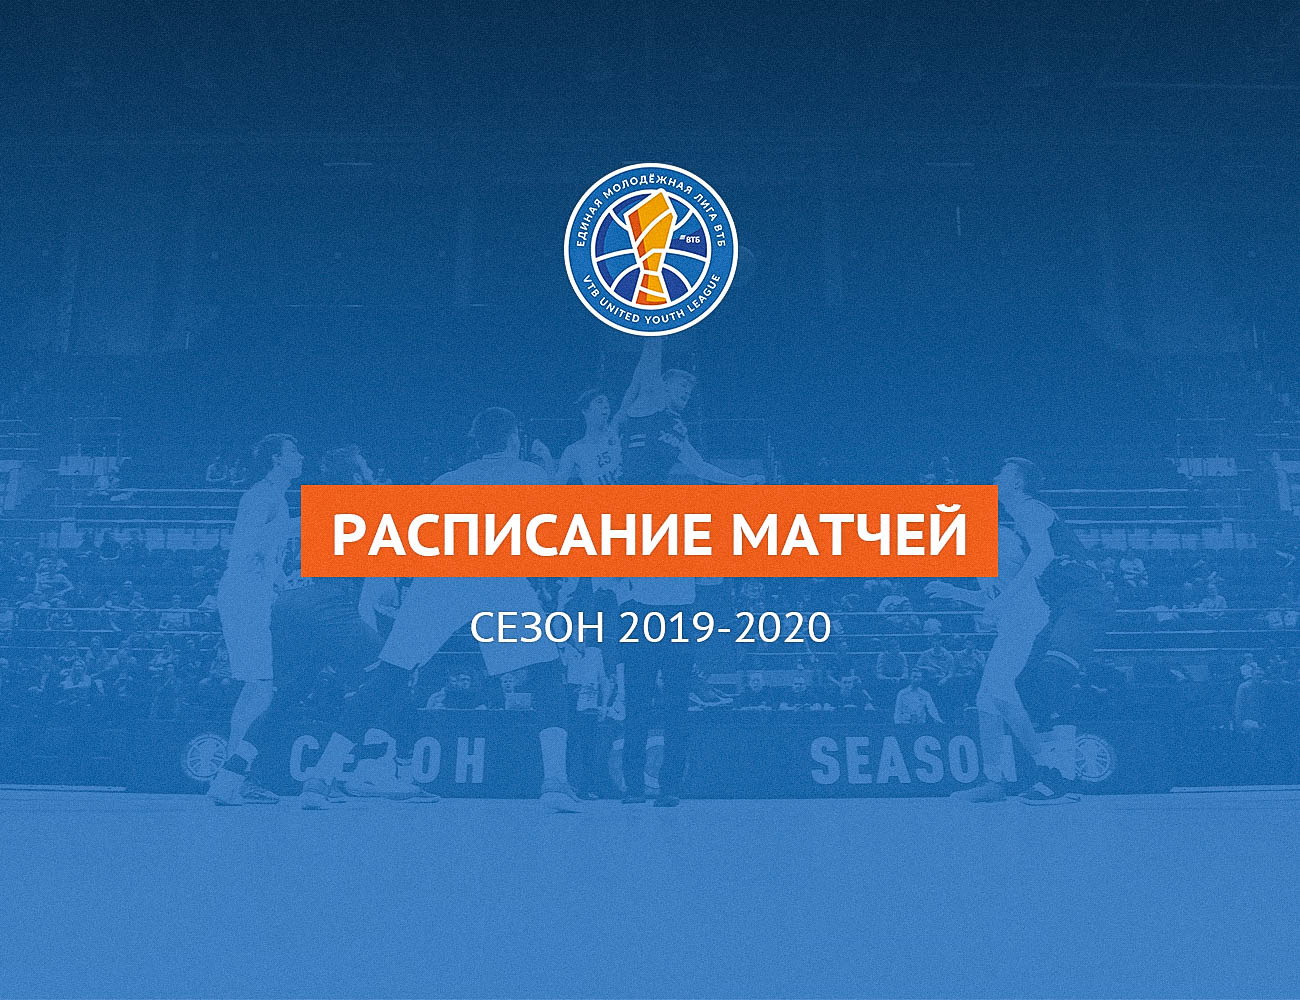 Утвержден календарь молодежного чемпионата-2019/20